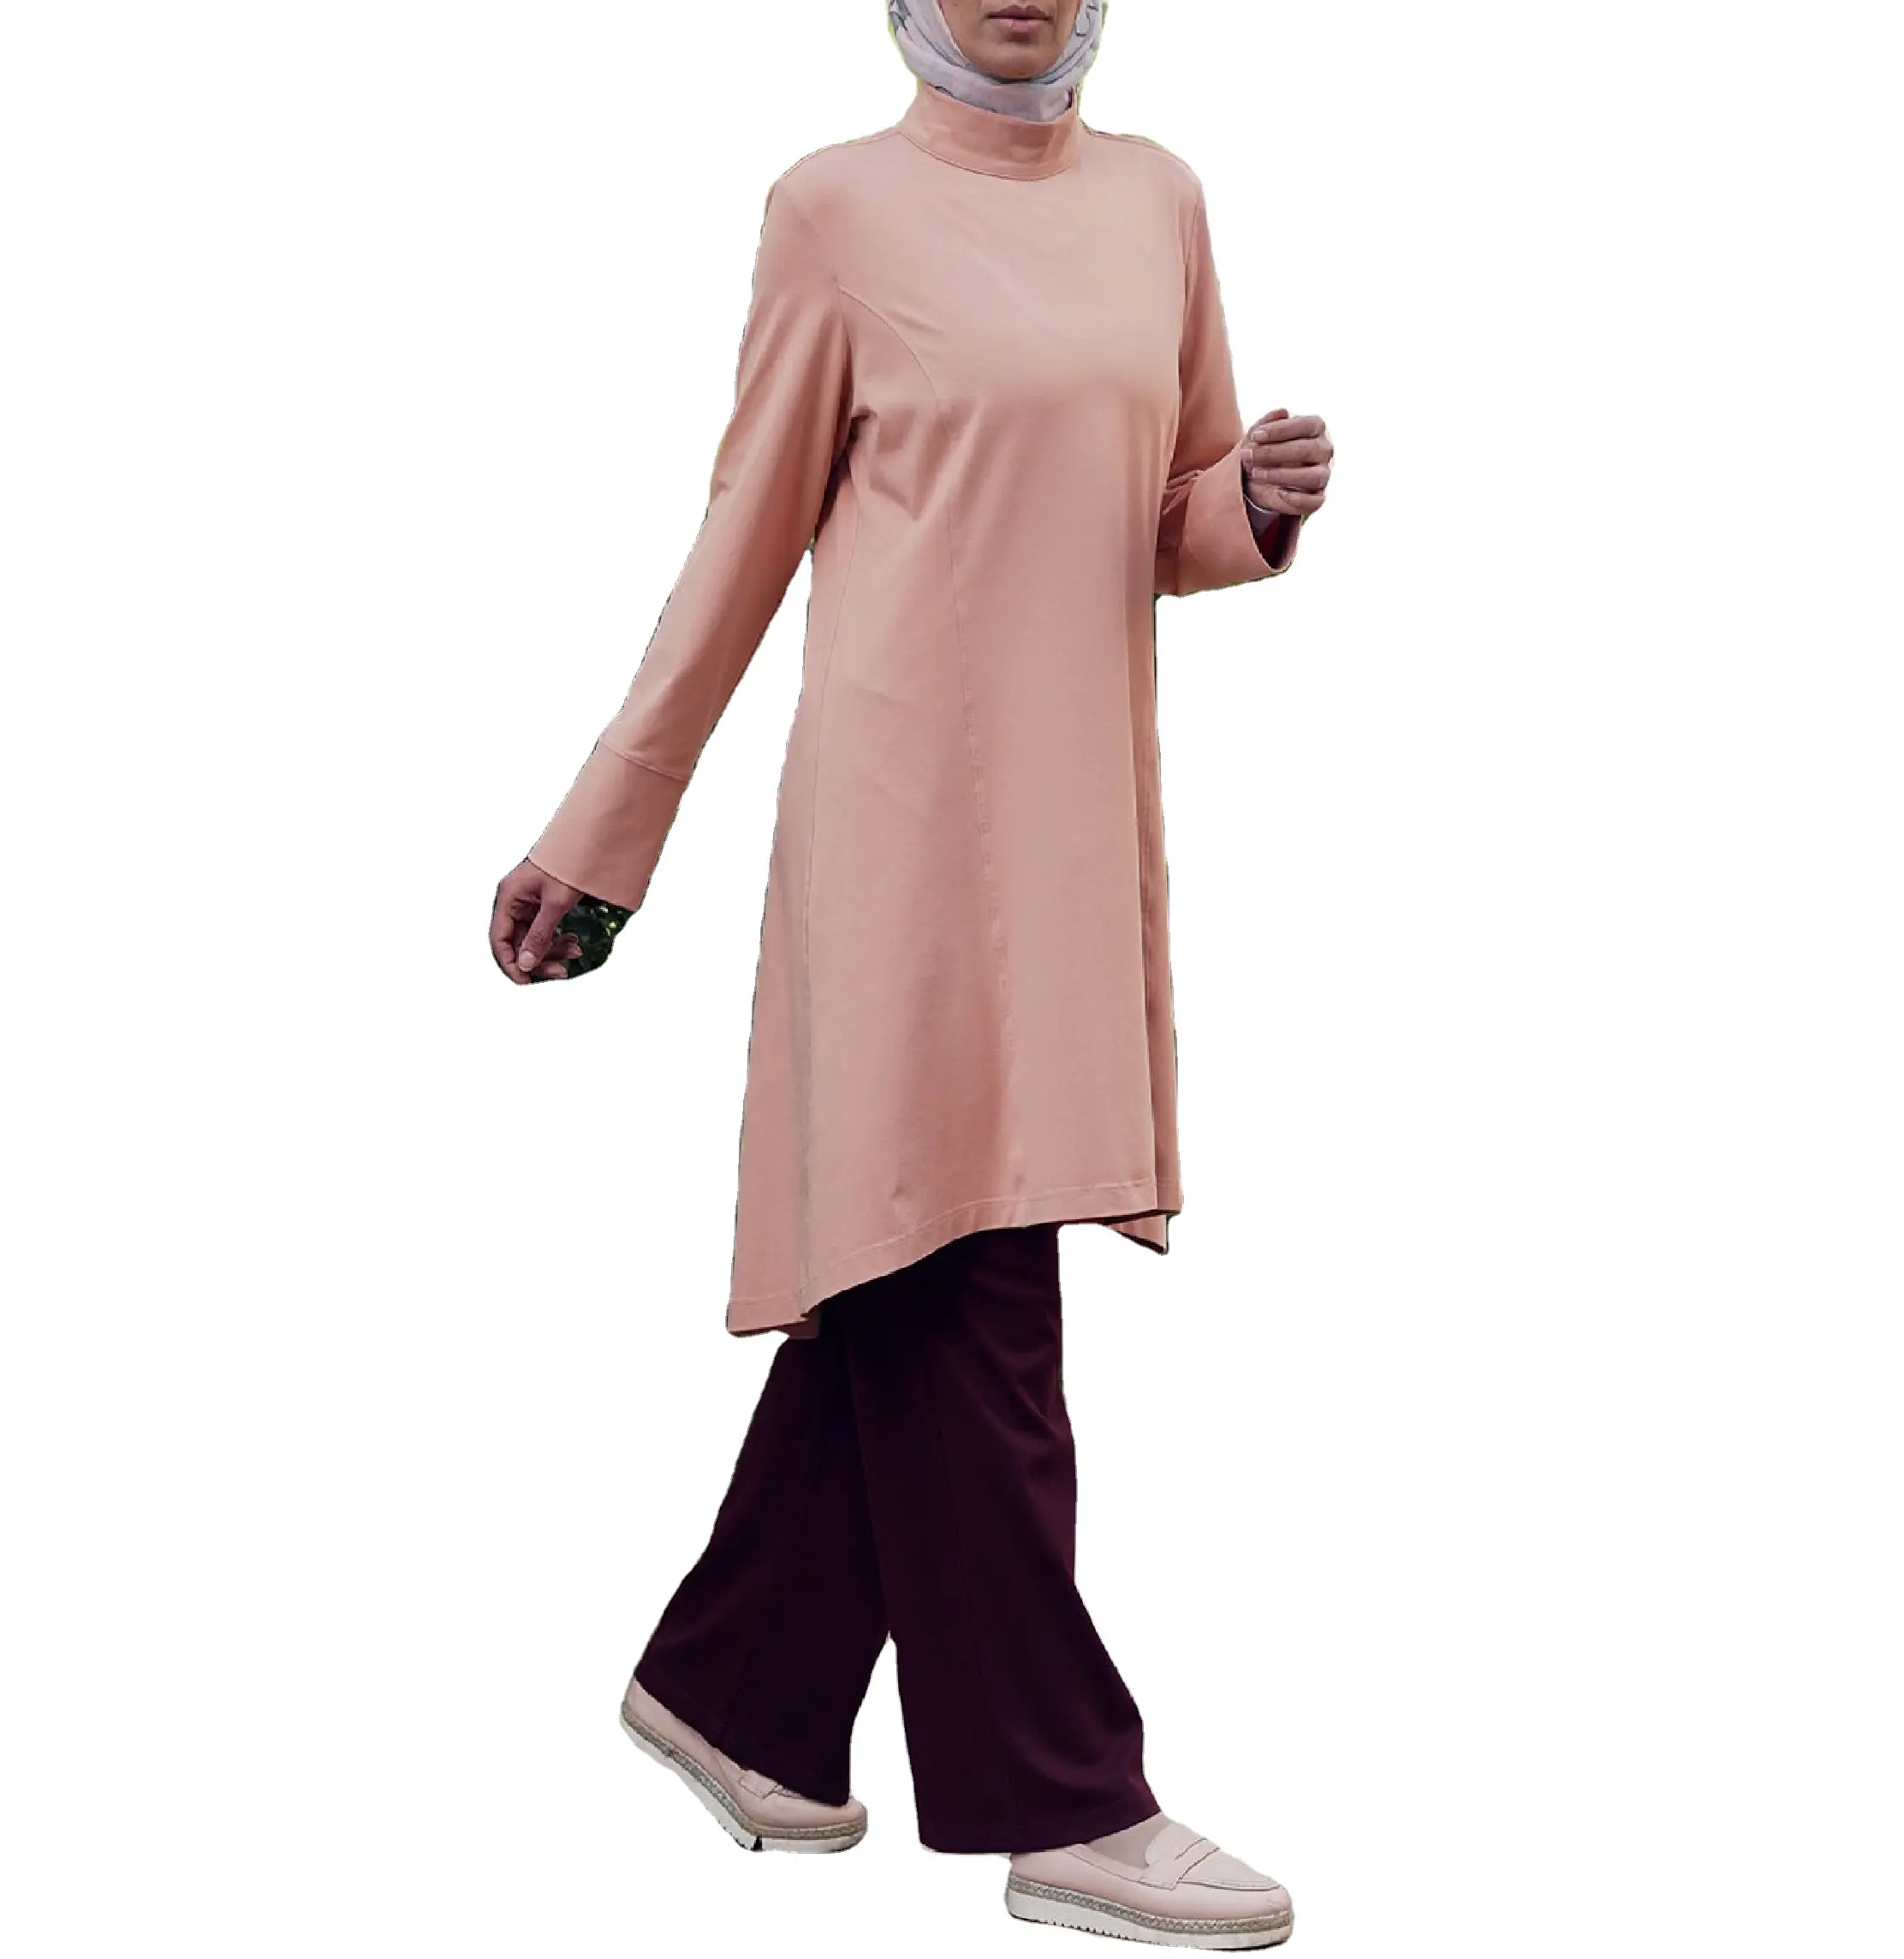 Ropa deportiva para mujer, Túnica activa con cremallera y cuello superior, hasta la rodilla Sudadera larga, ropa tradicional musulmana, producto de Amazon